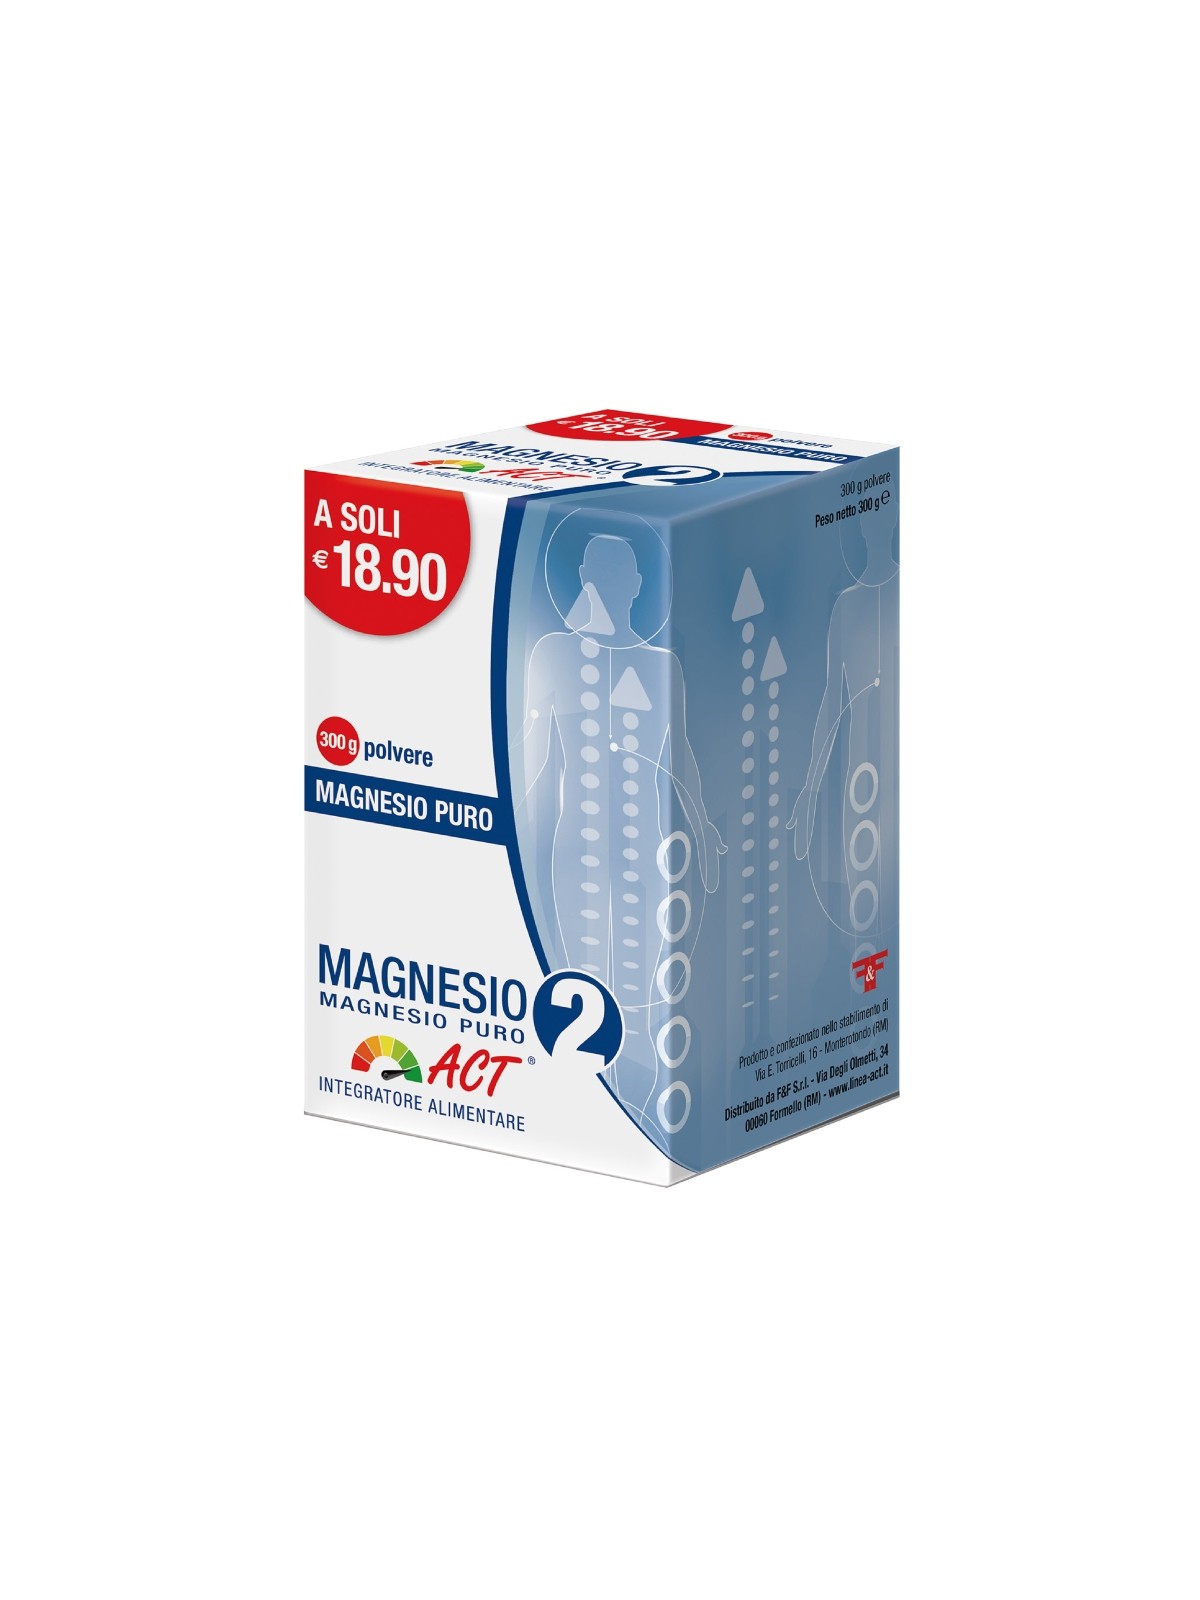 Magnesio 2 Act - Magnesio Puro 300 g polvere